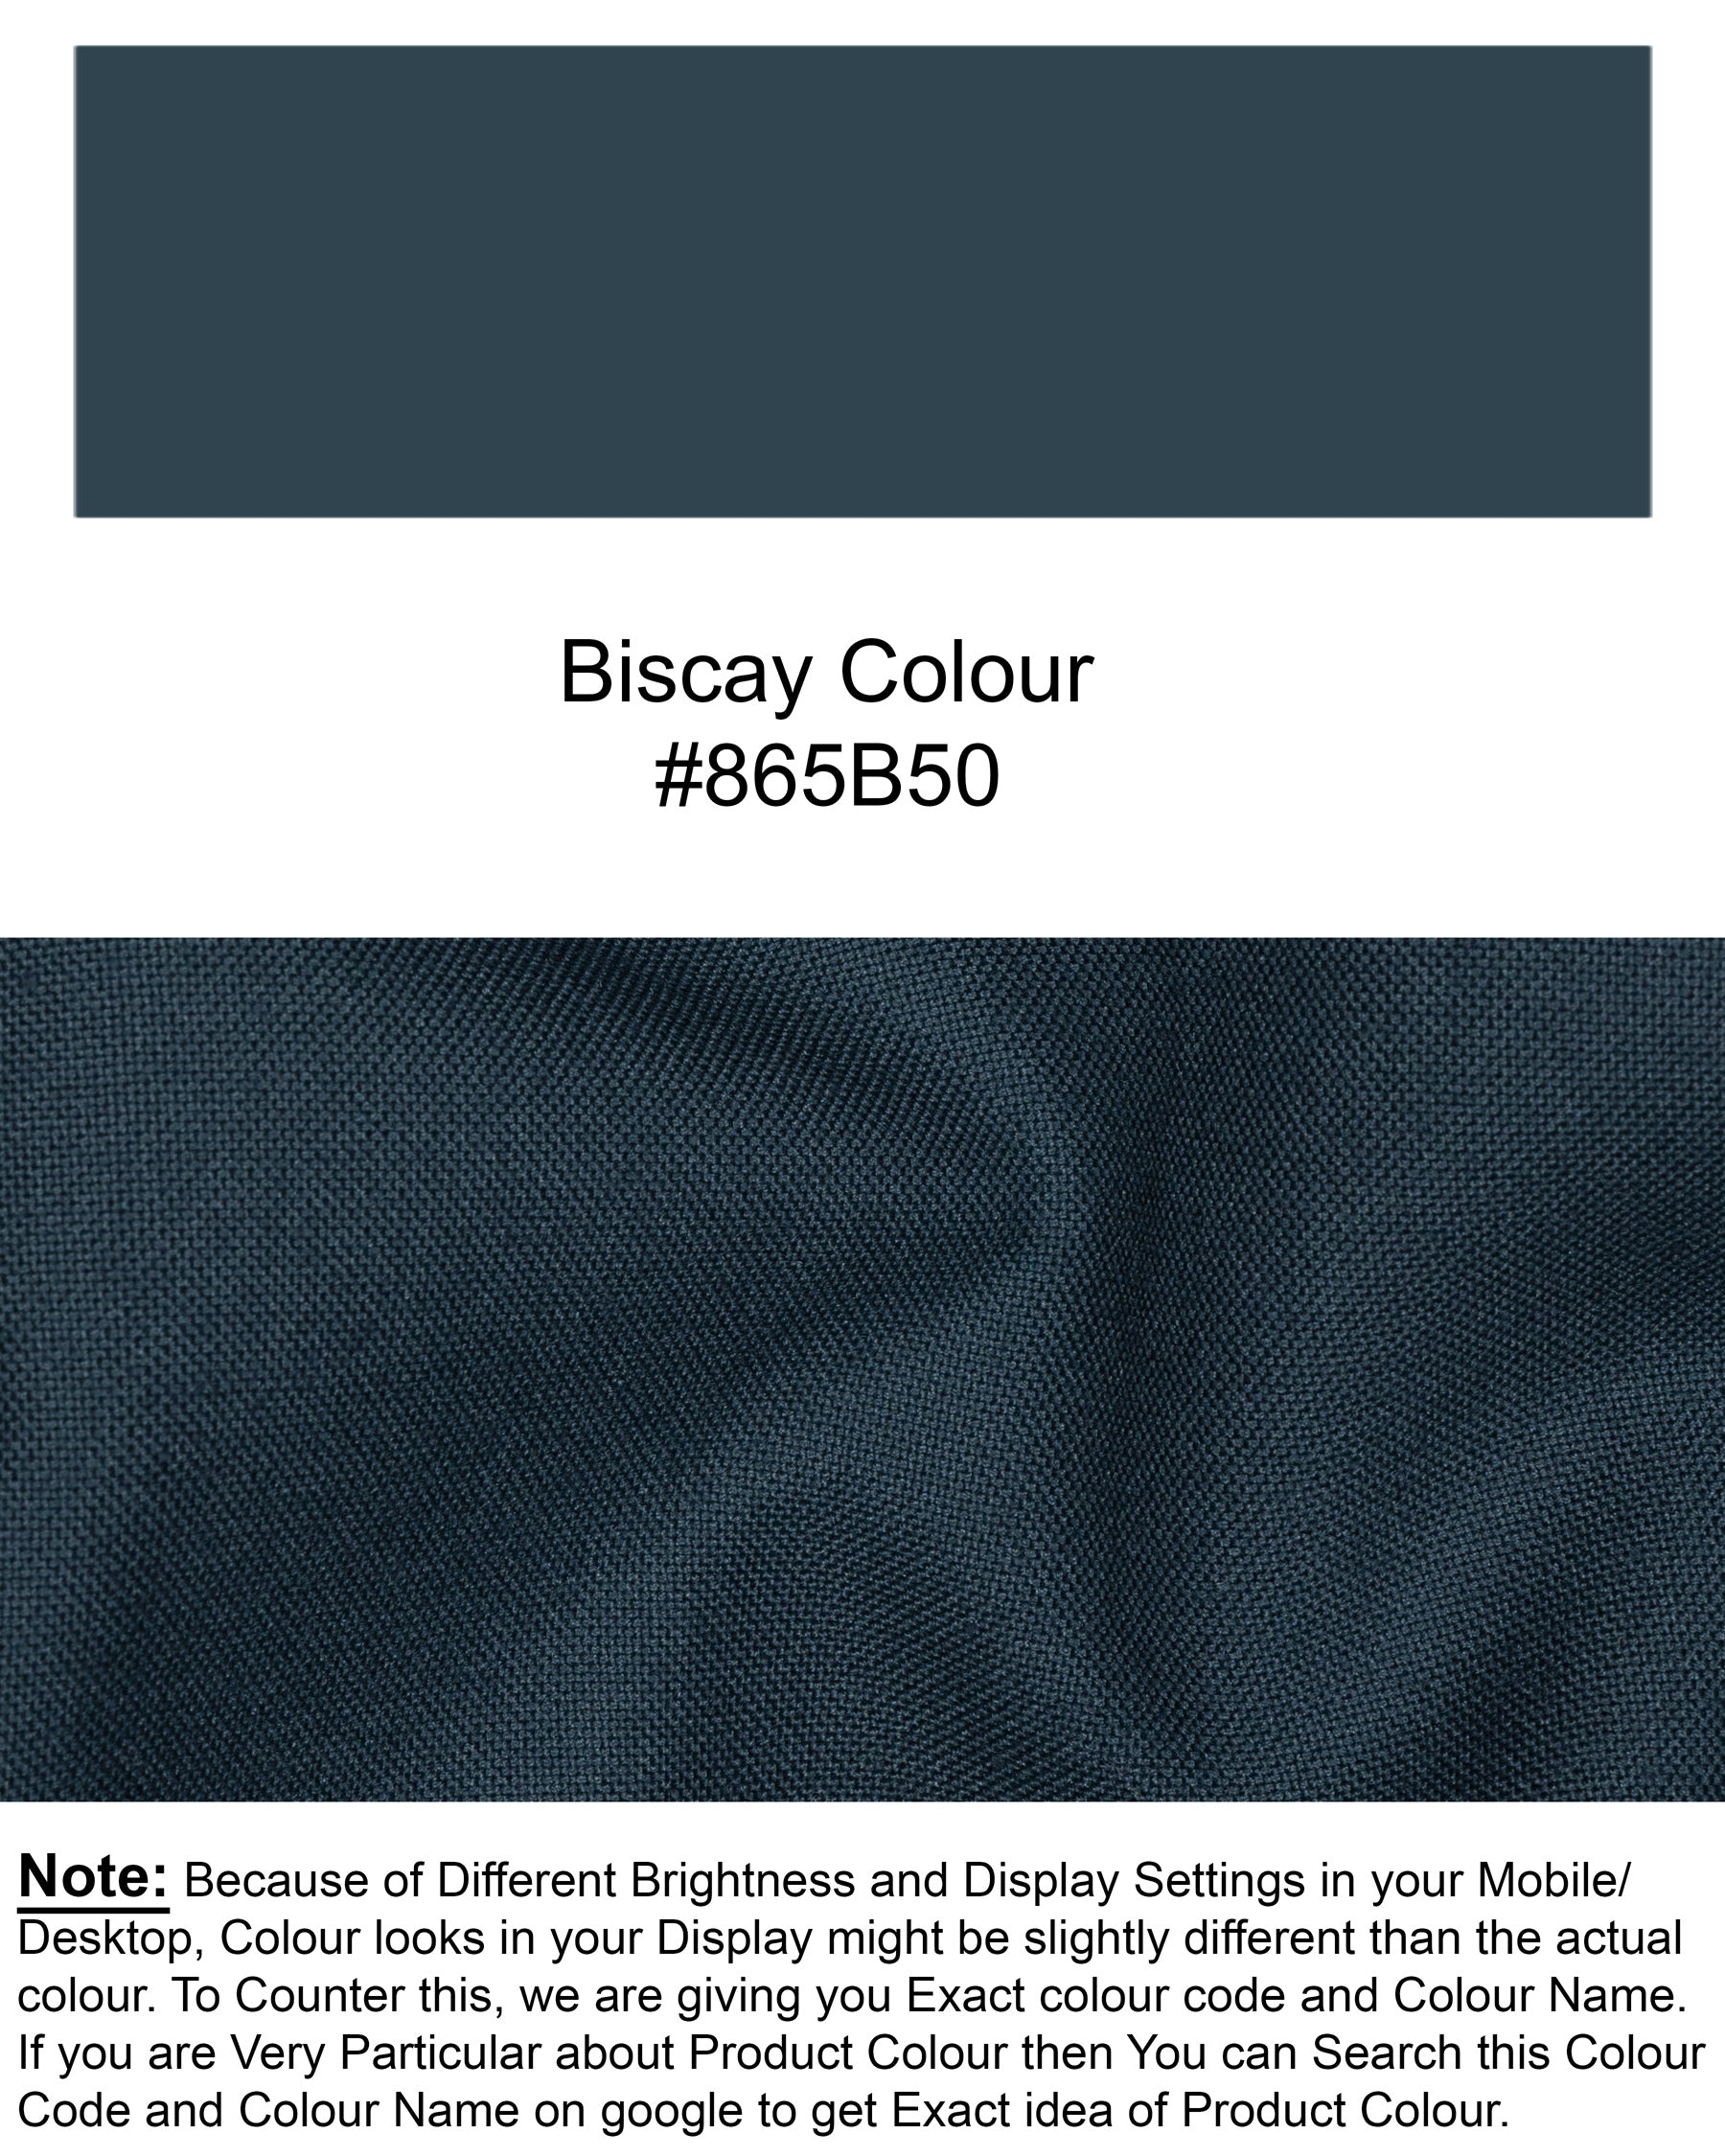 Biscay Blue Wool Rich Tuxedo Blazer BL1411-BKL-36, BL1411-BKL-38, BL1411-BKL-40, BL1411-BKL-42, BL1411-BKL-44, BL1411-BKL-46, BL1411-BKL-48, BL1411-BKL-50, BL1411-BKL-52, BL1411-BKL-54, BL1411-BKL-56, BL1411-BKL-58, BL1411-BKL-60